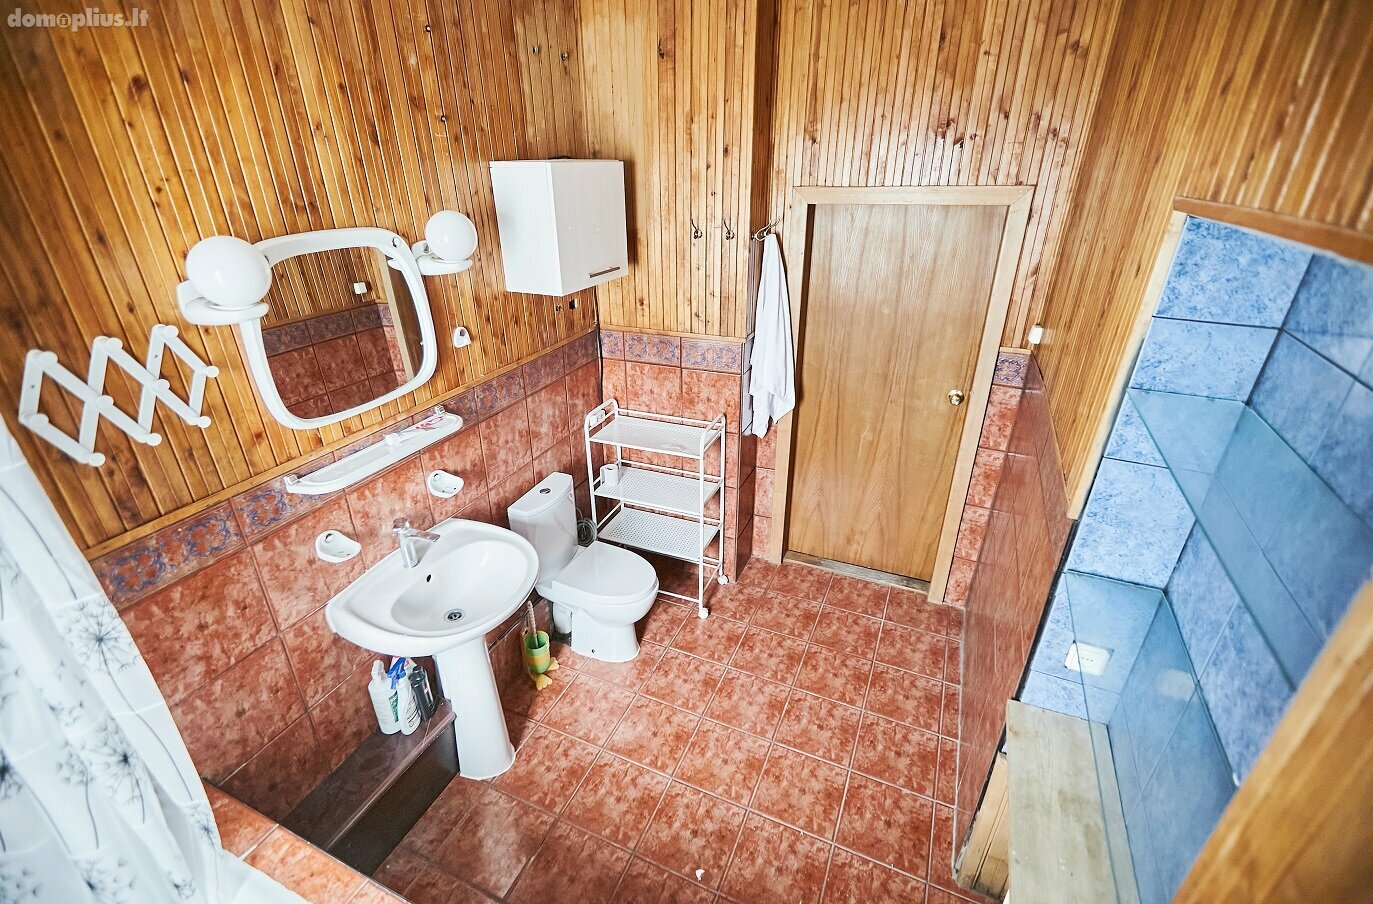 Продается 3 комнатная квартира Kaune, Aukštieji Šančiai, Pravieniškių g.